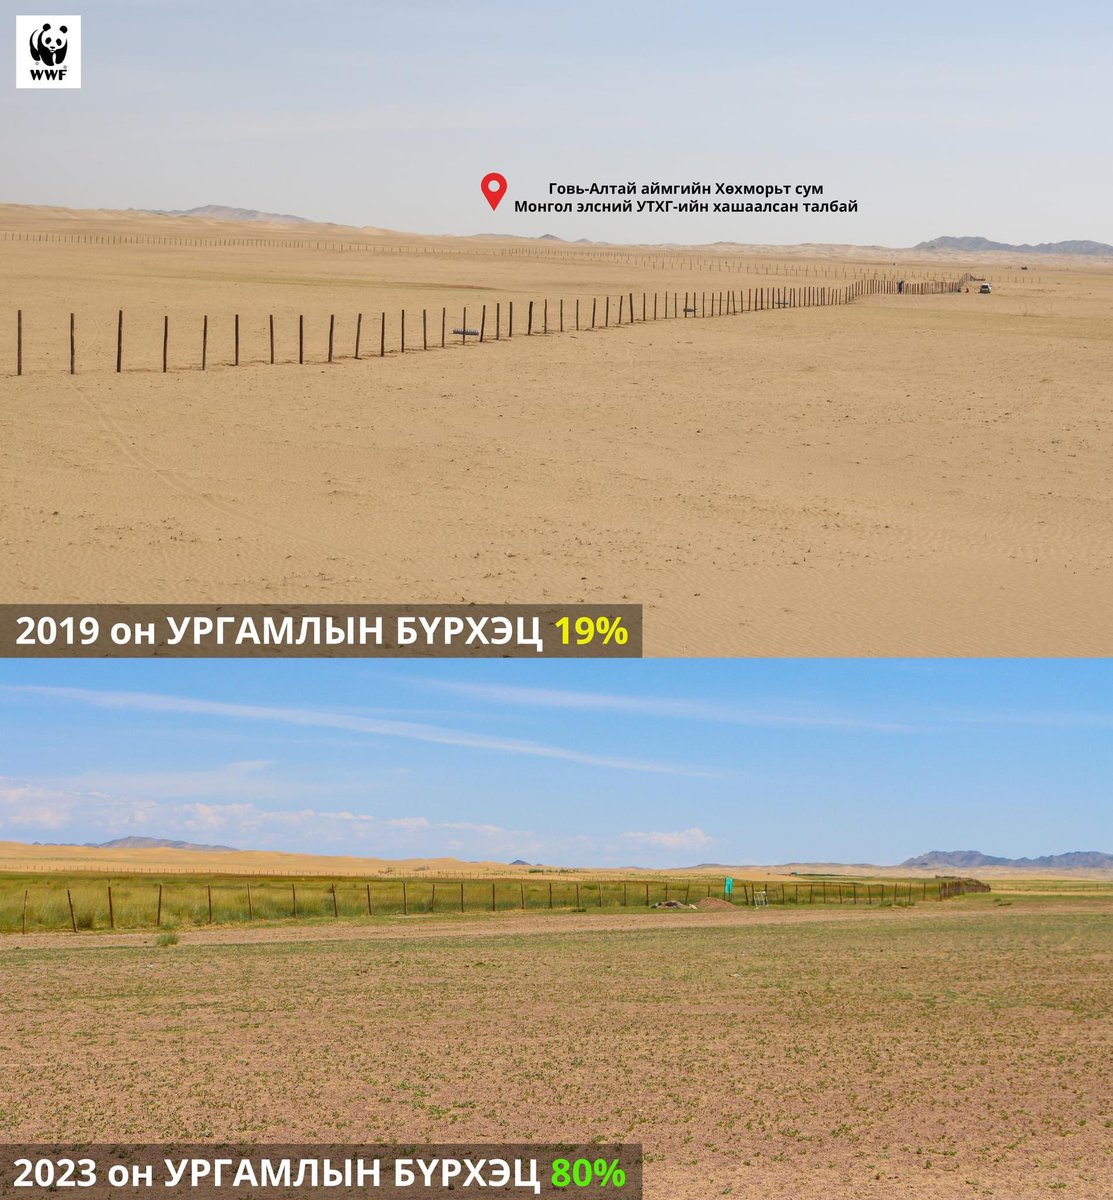 Та 5 жилийн өмнөх ба одоог харьцуулсан зургийг харж байна. 
Монгол элсний УТХГ-тай хамтран элсний нүүдлээс хамгаалах хашаа татсанаар байгалийн ургамал өөрөөрөө сэргэн ургаж 5 жилийн өмнө 19-хэн хувьтай байсан ургамлын бүрхэц 80% болжээ. 
#WWFMongolia  #ASER